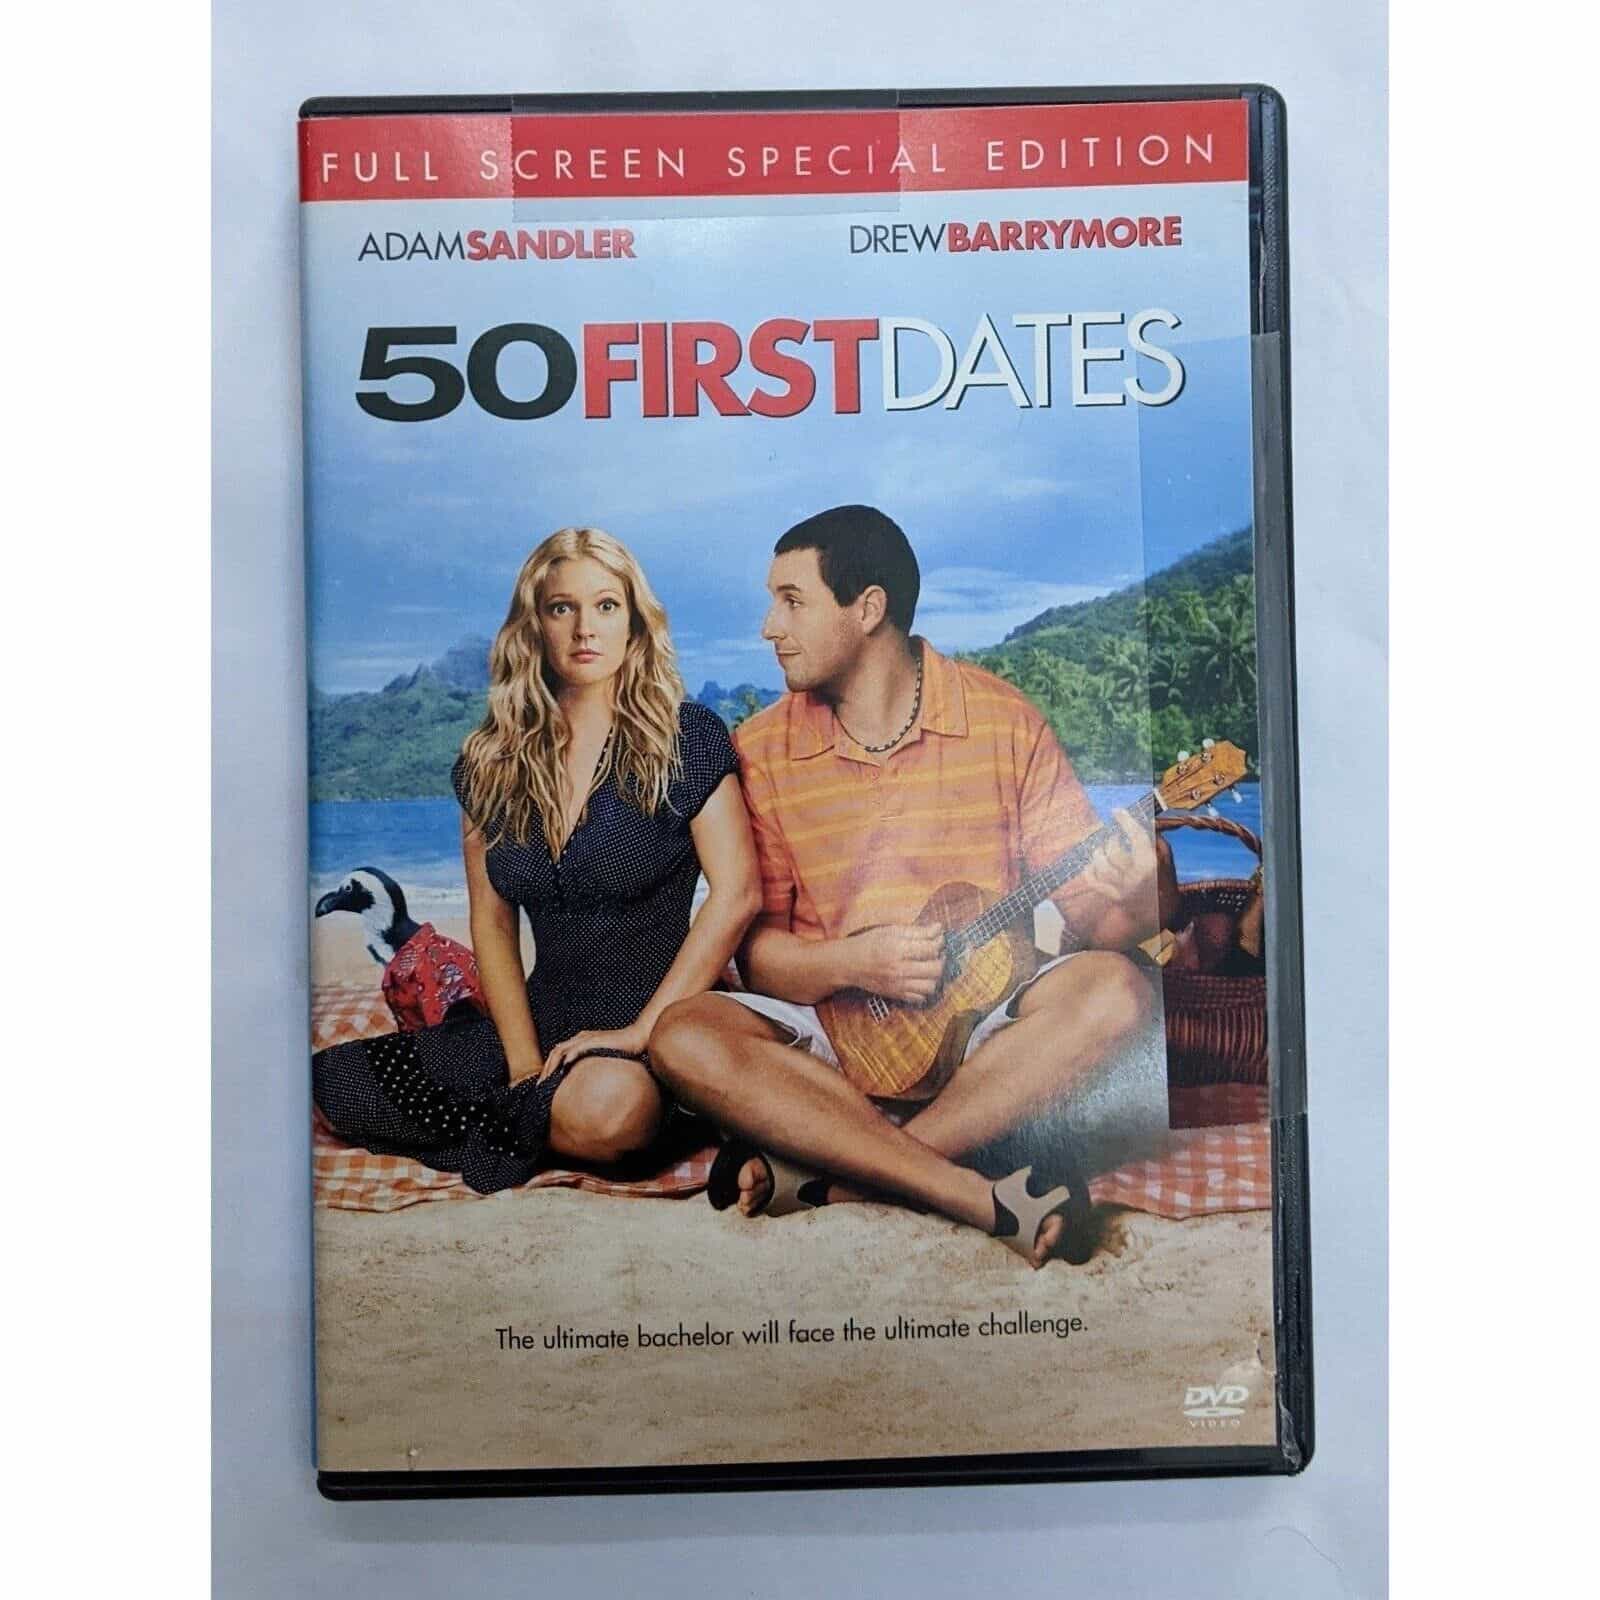 50 First Dates DVD movie